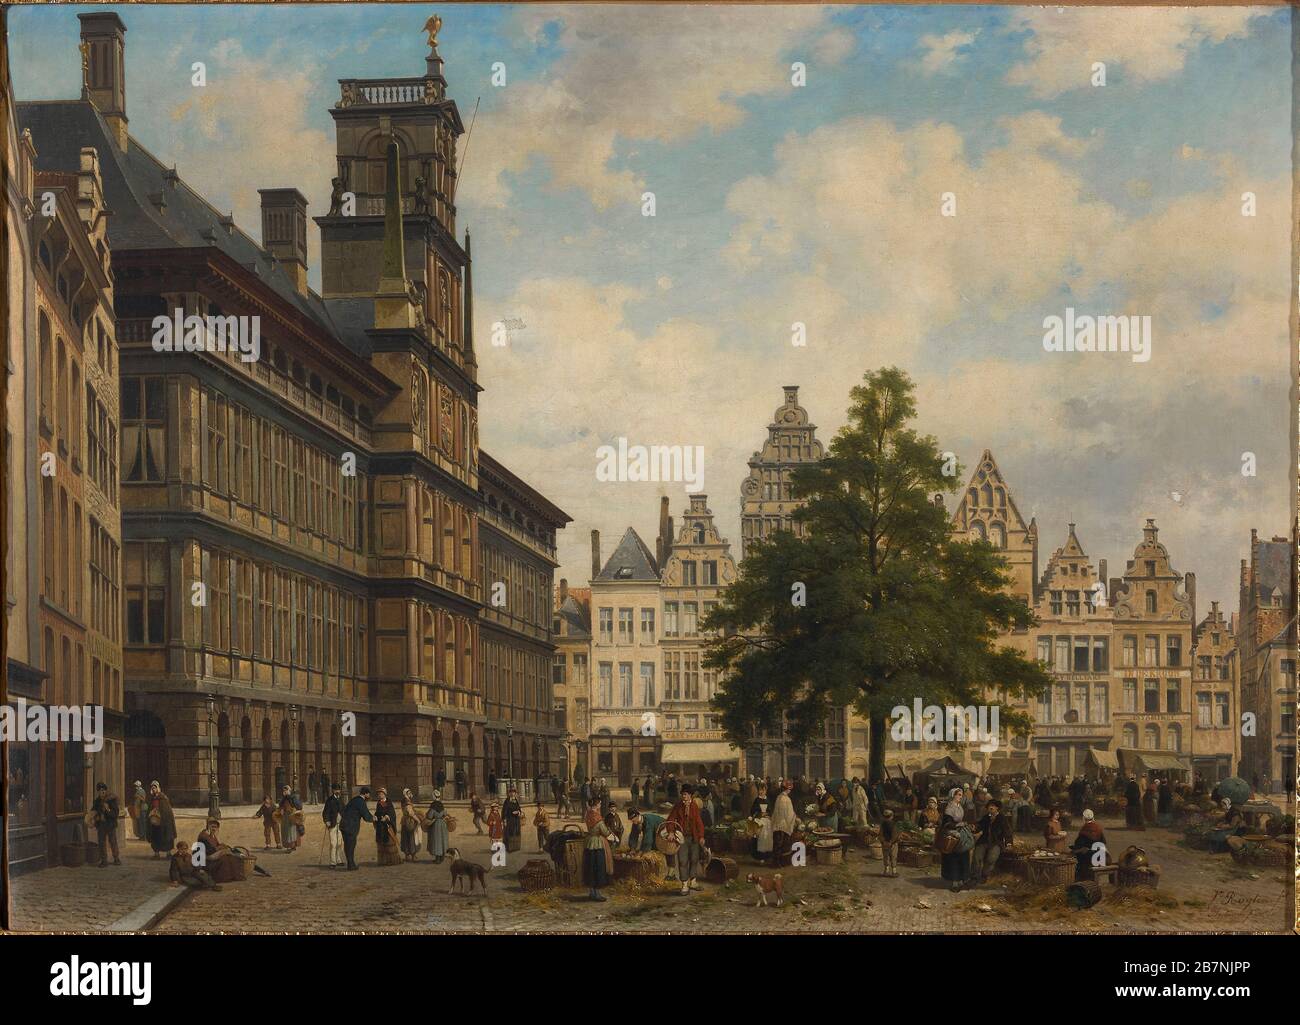 Der Grote Markt mit dem Freiheitsbaum, 1875. Gefunden in der Sammlung des Museums aan de Stroom. Stockfoto